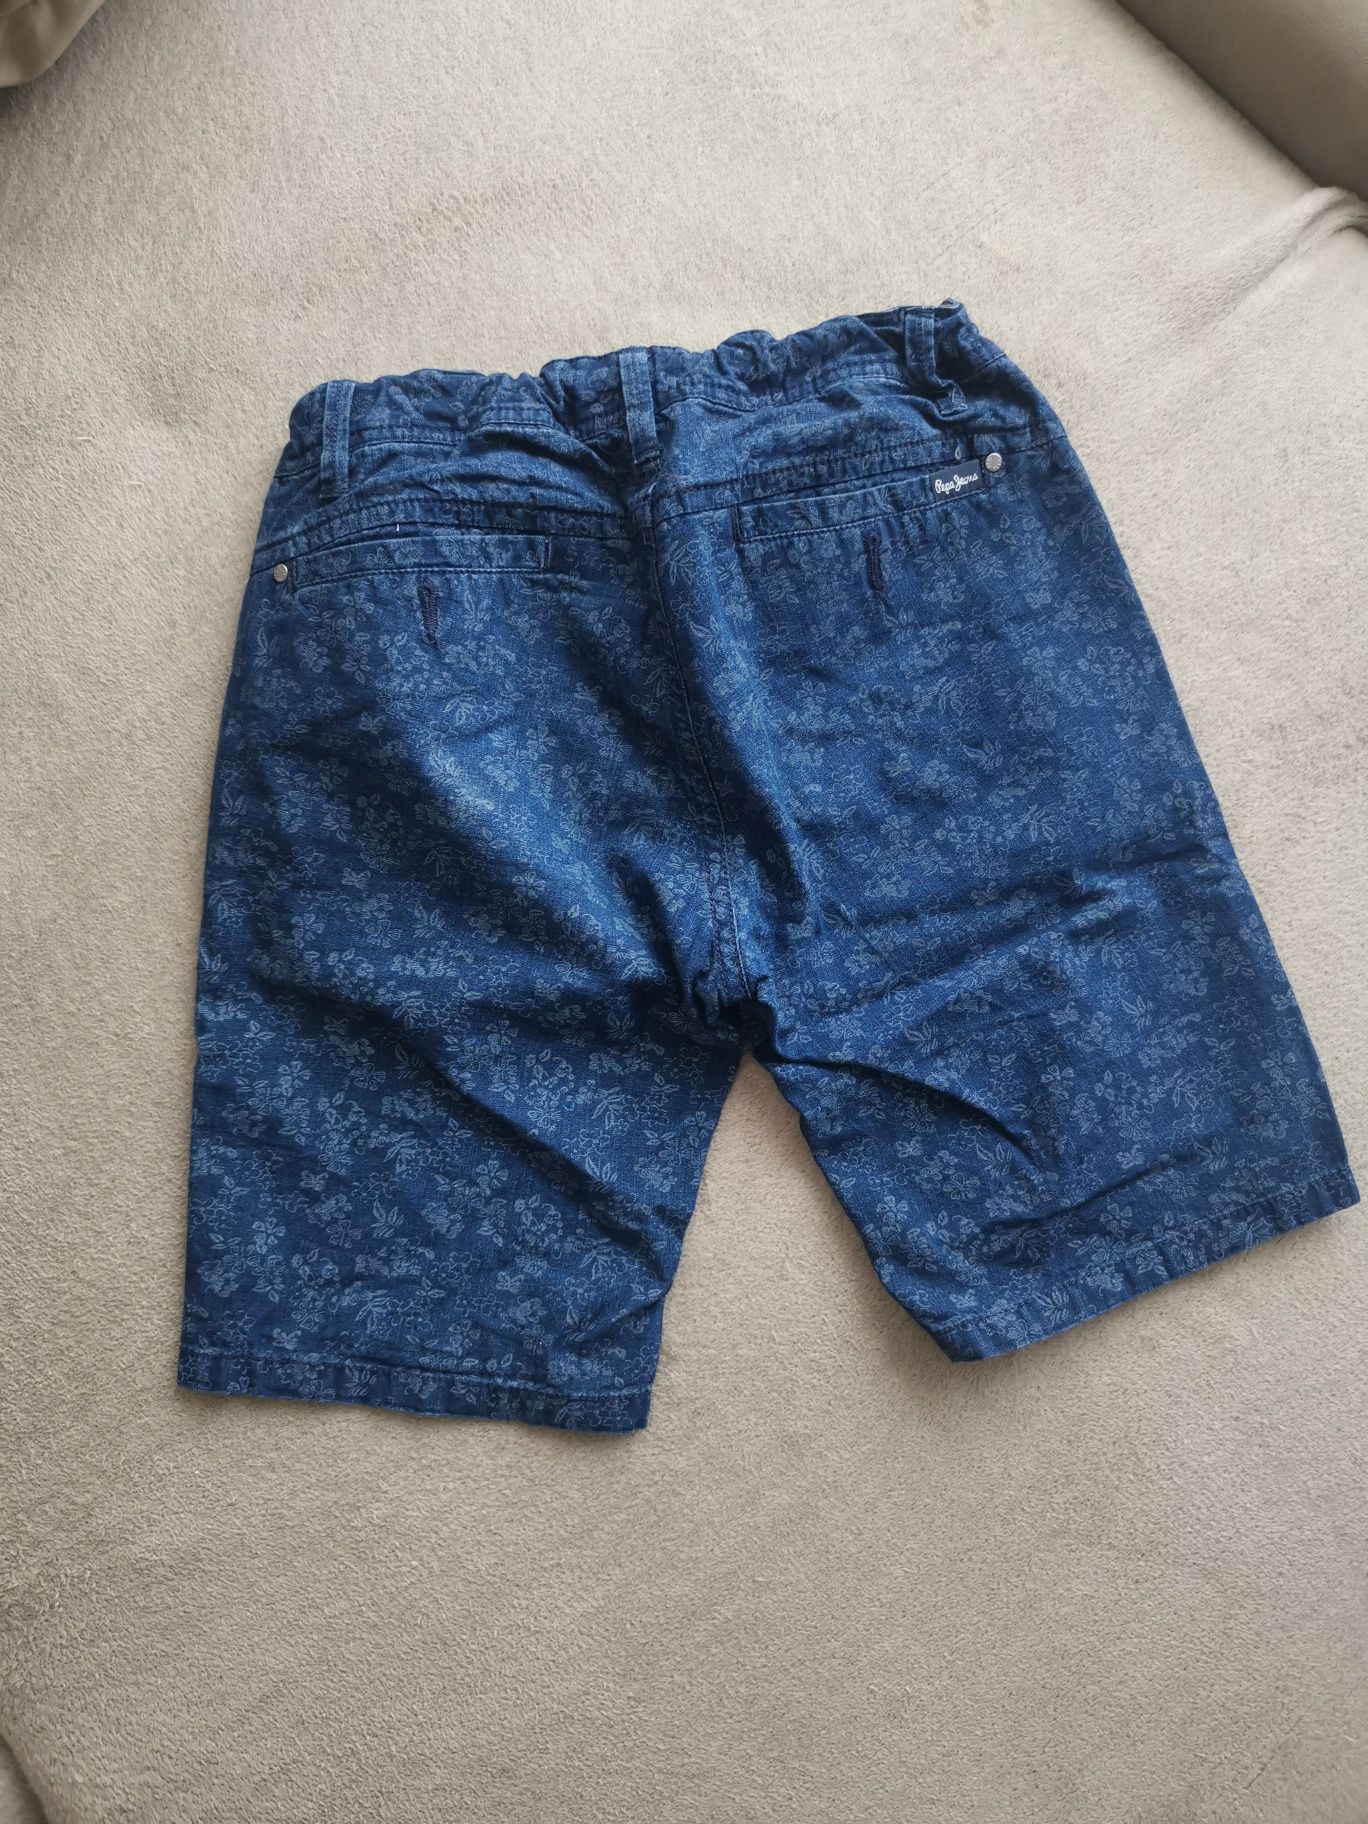 Къси панталони Pepe Jeans, 140 см., 10г.